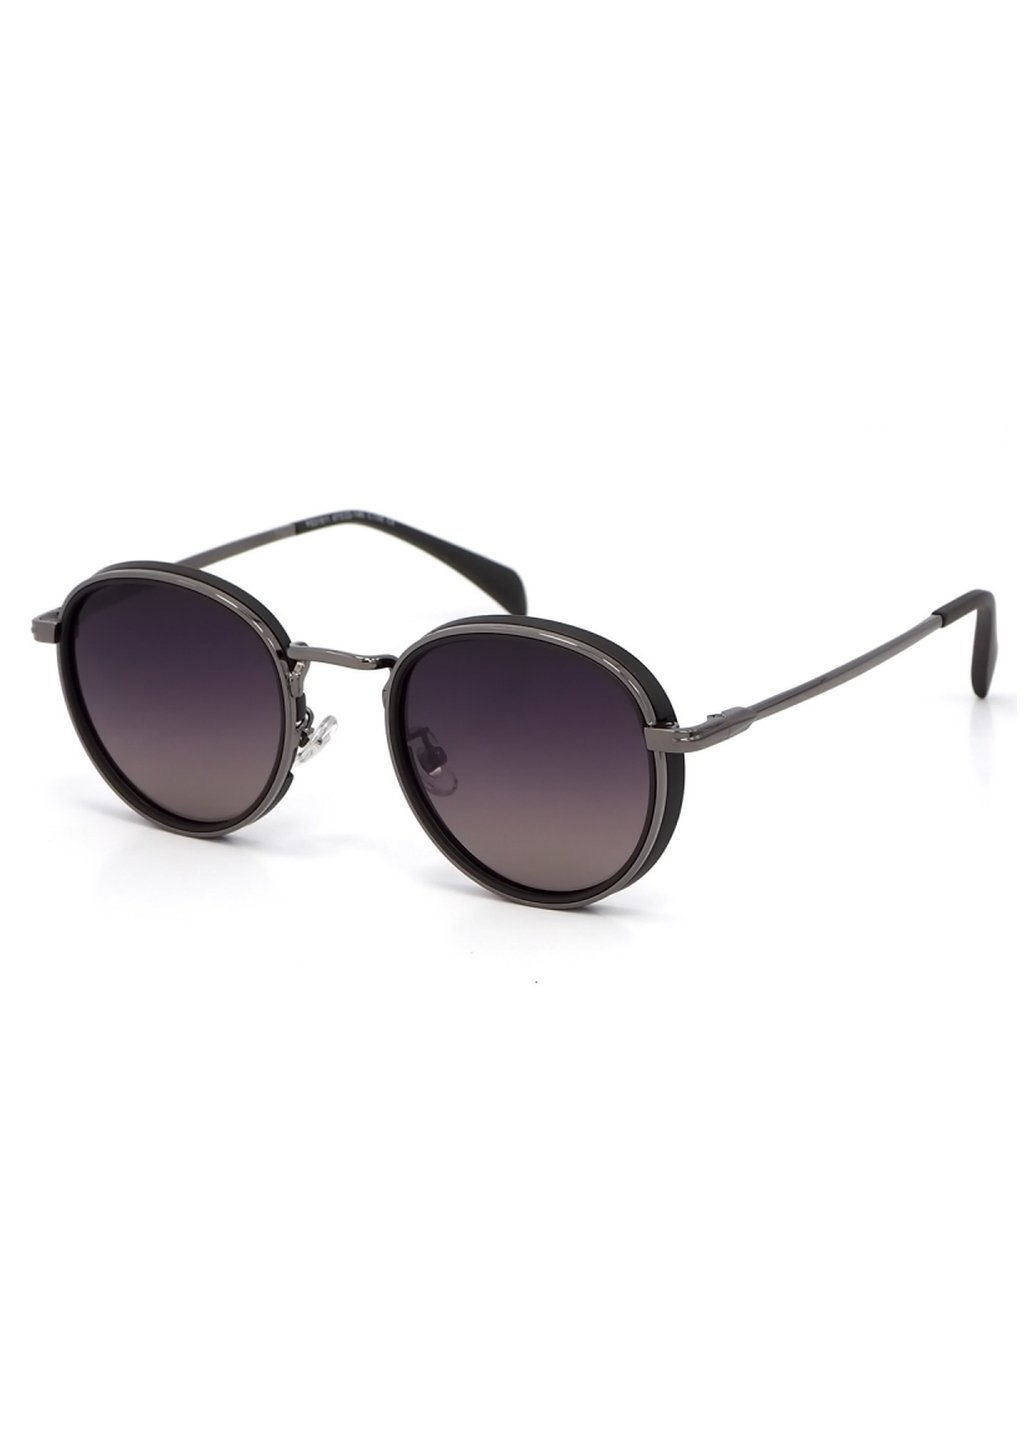 Купить Женские солнцезащитные очки Merlini с поляризацией S31811P 117020 - Черный в интернет-магазине